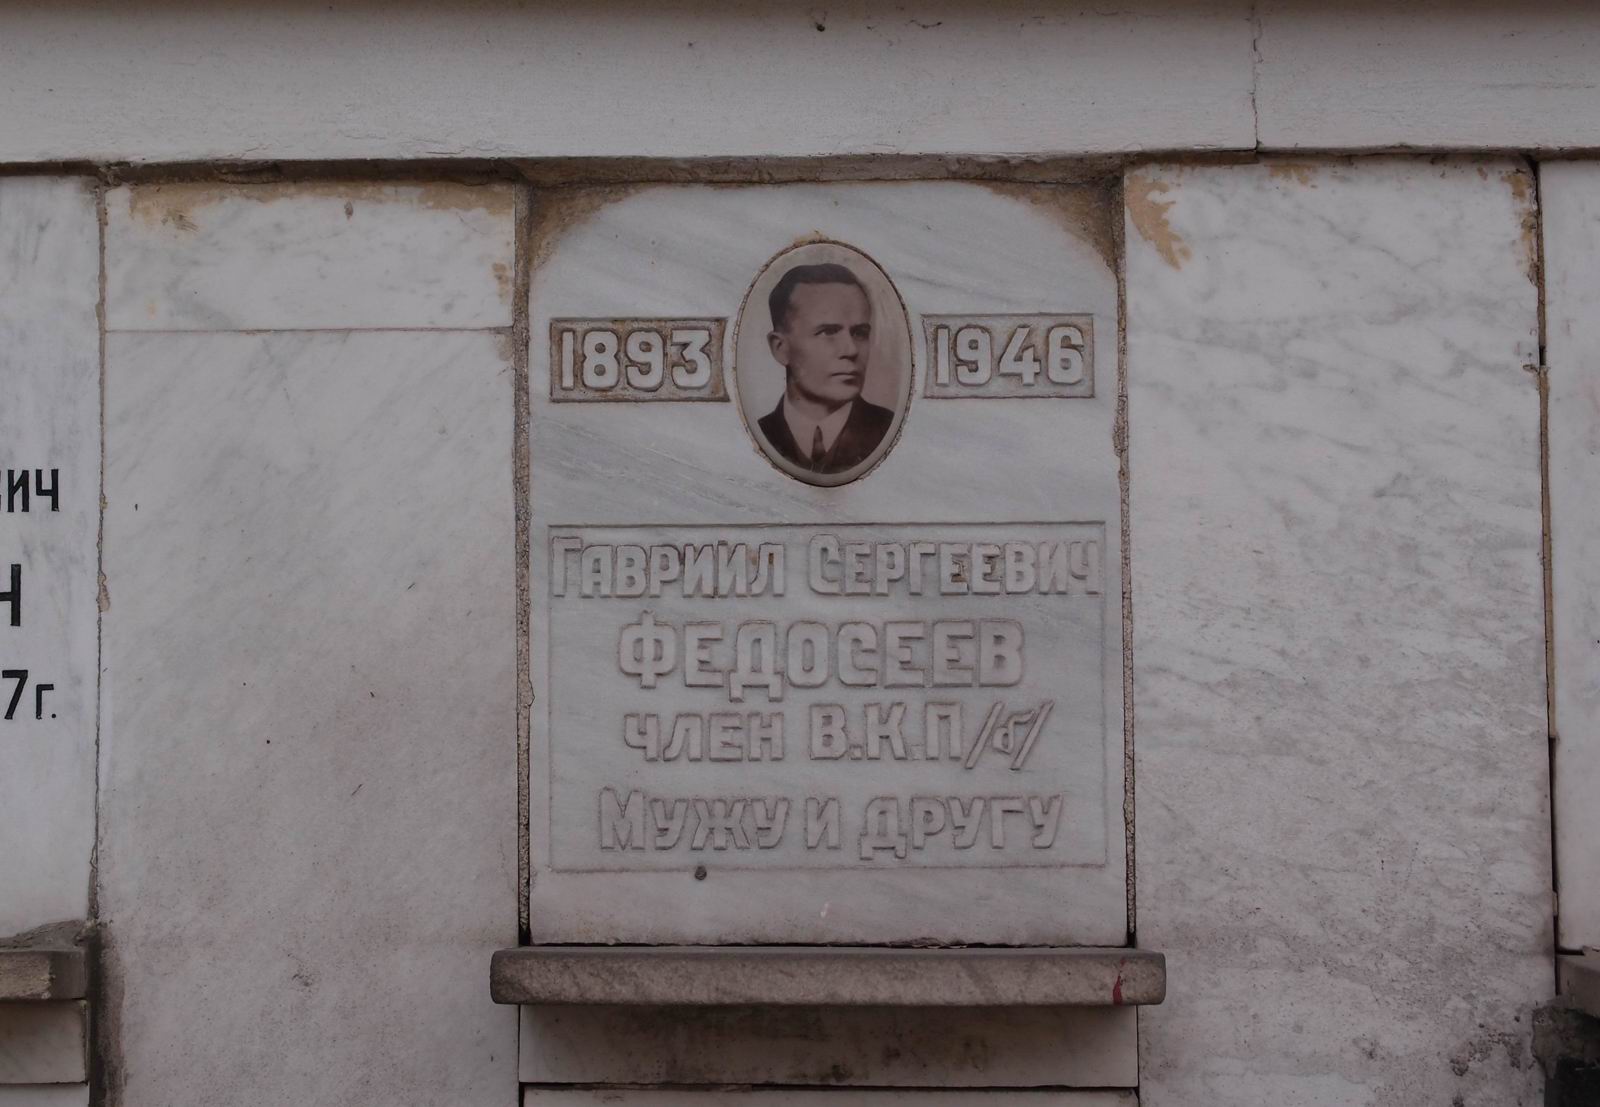 Плита на нише Федосеева Г.С. (1893-1946), на Новодевичьем кладбище (колумбарий [70]-3-1).